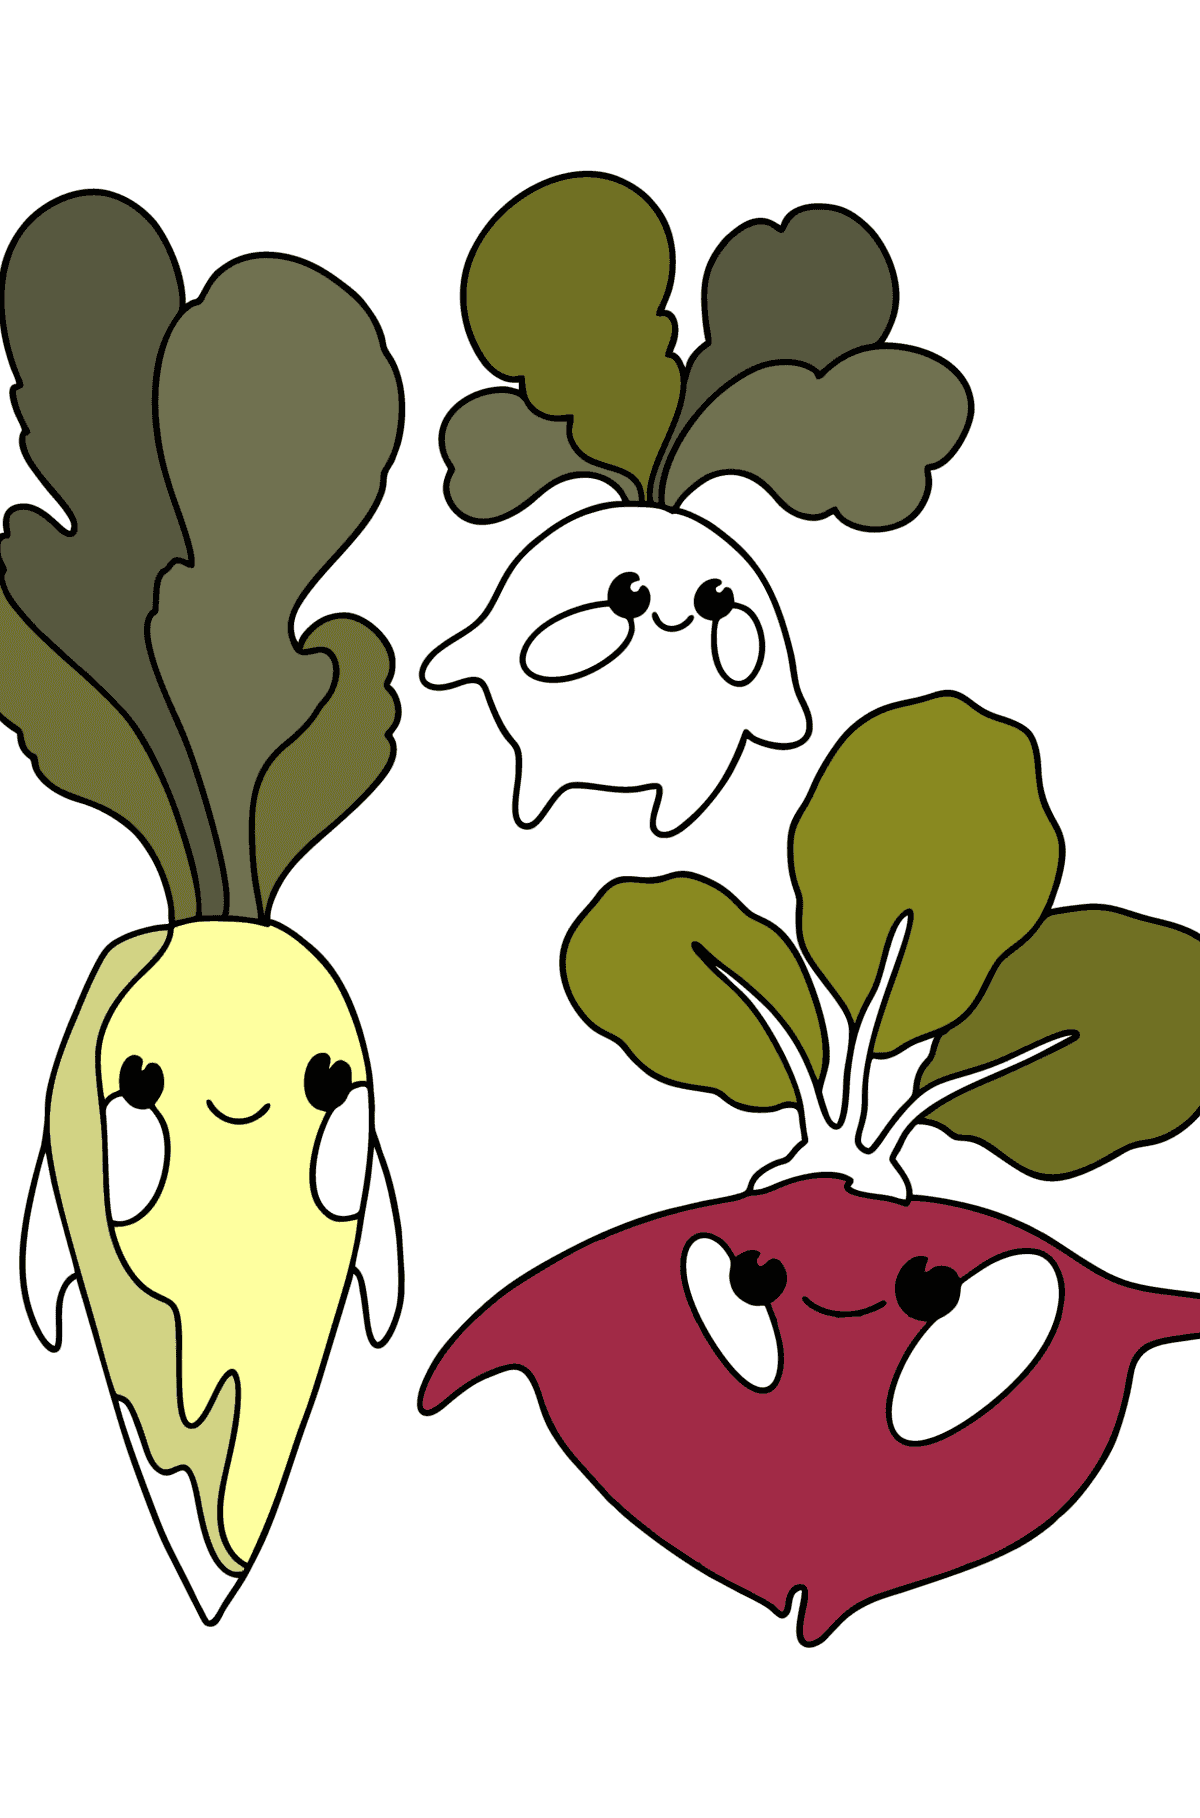 Kolorowanka Warzywa (daikon, rzodkiewka, buraki) - Kolorowanki dla dzieci